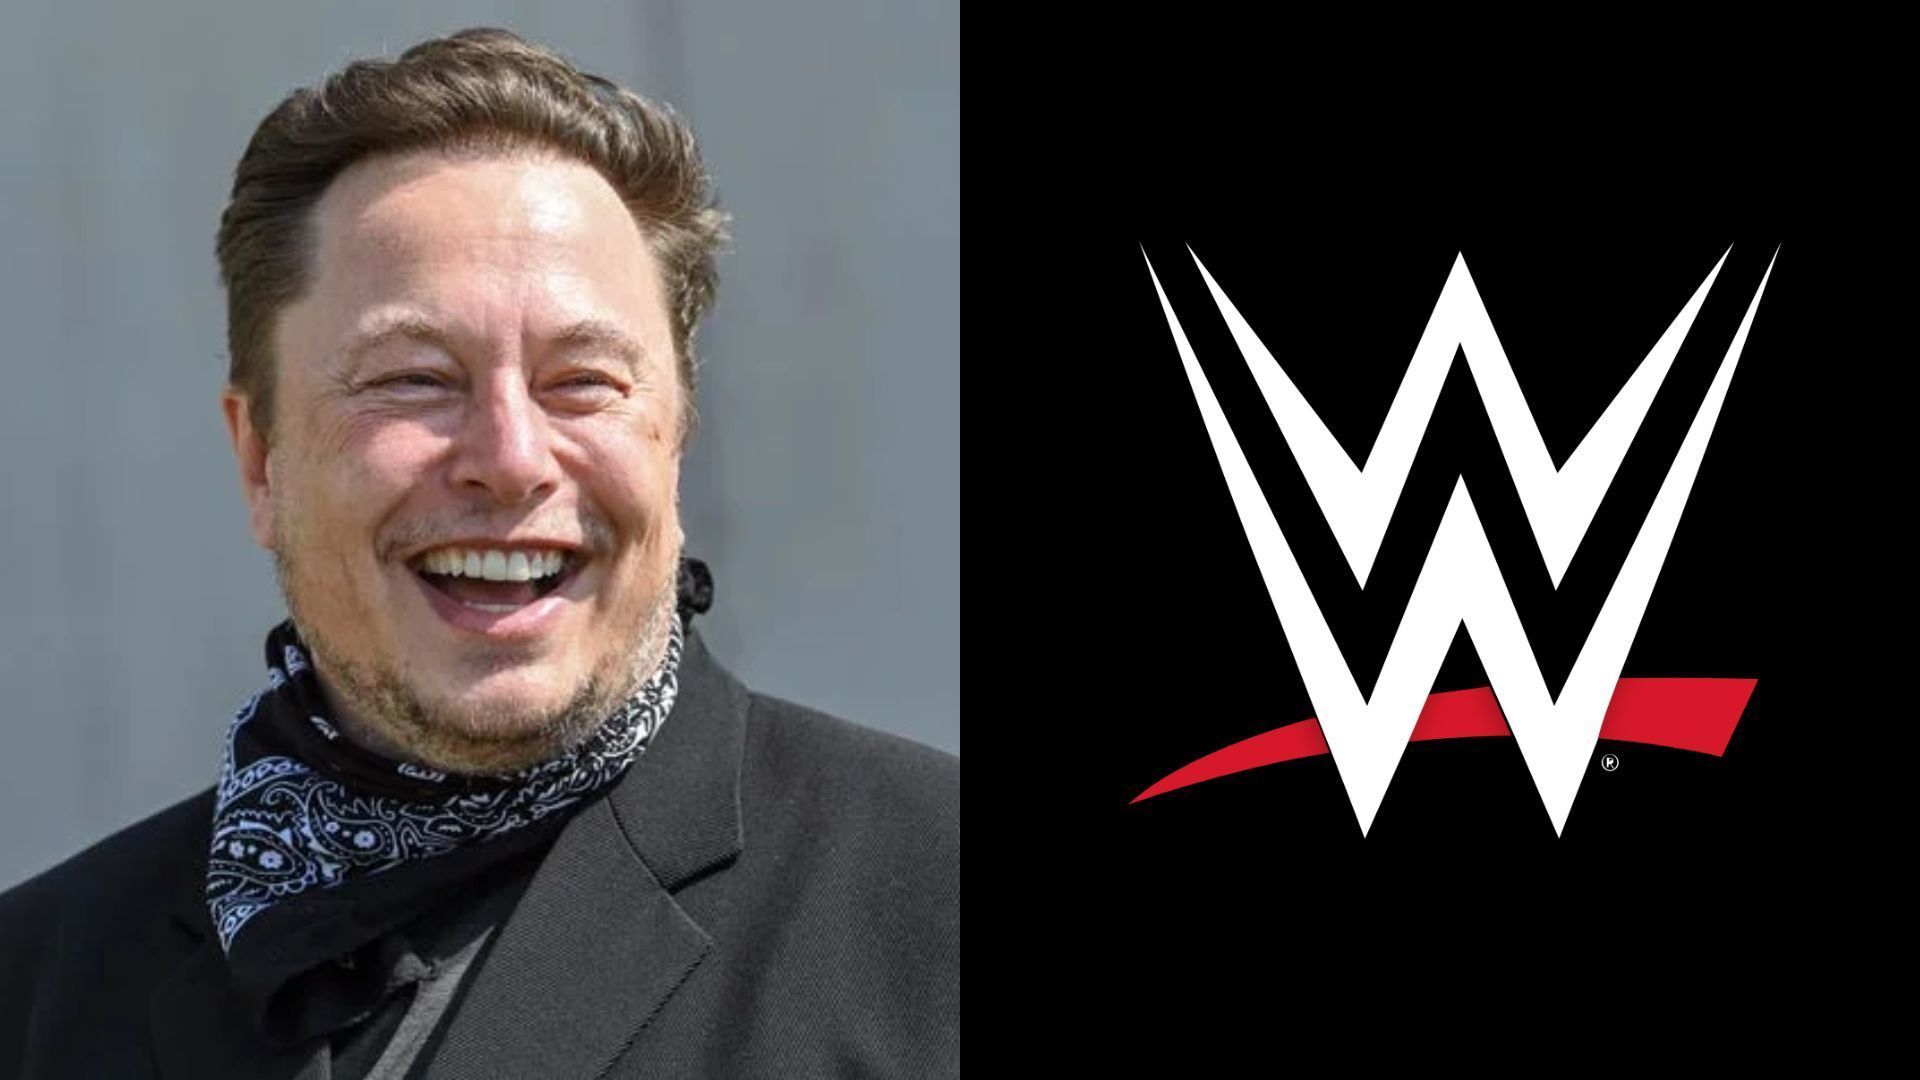 Will Elon Musk appear on WWE TV?